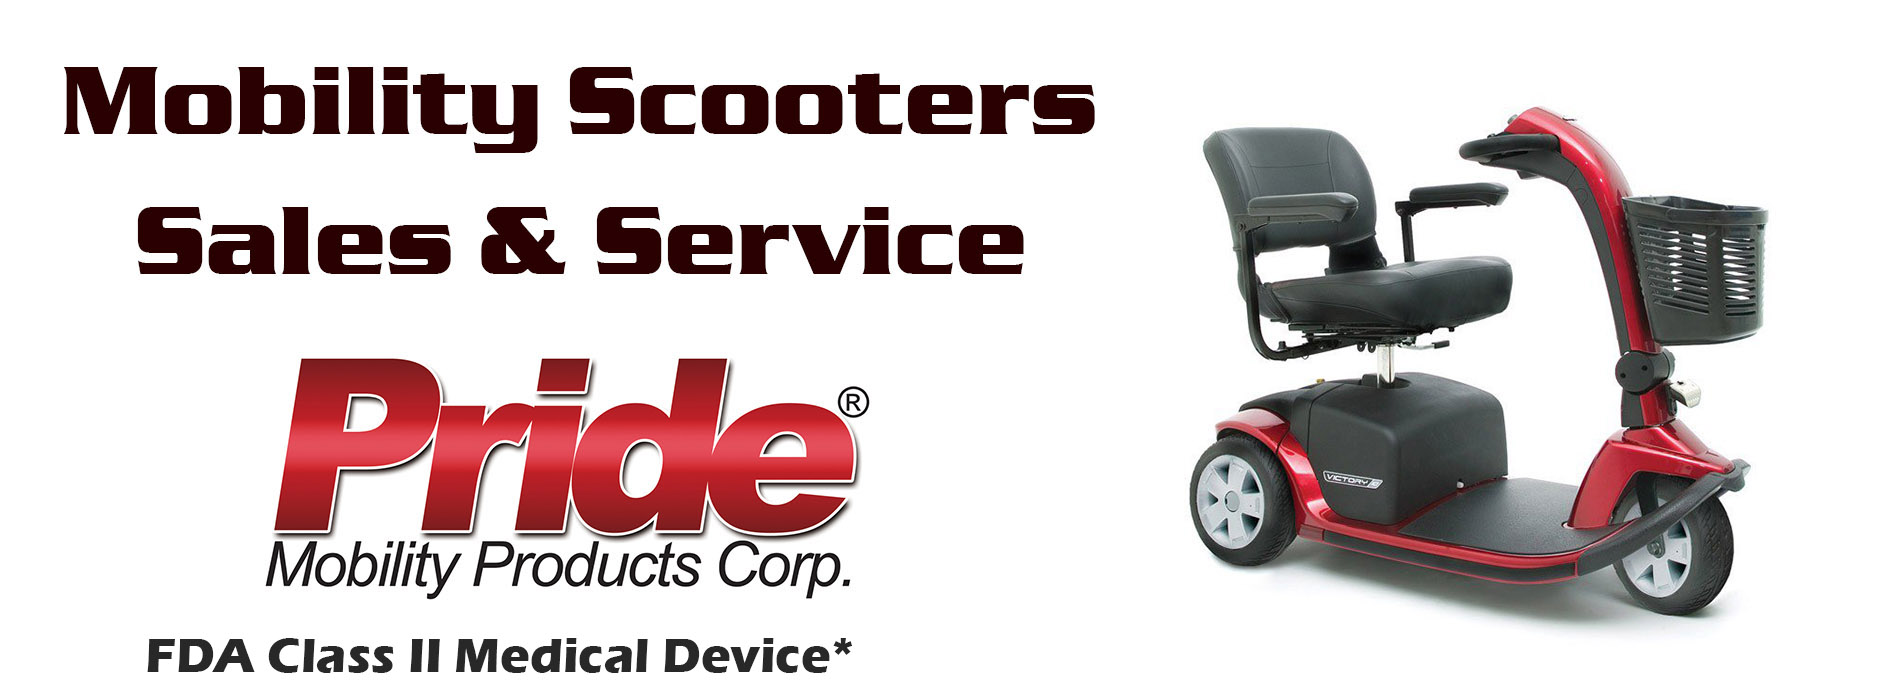 scooter_slider-4